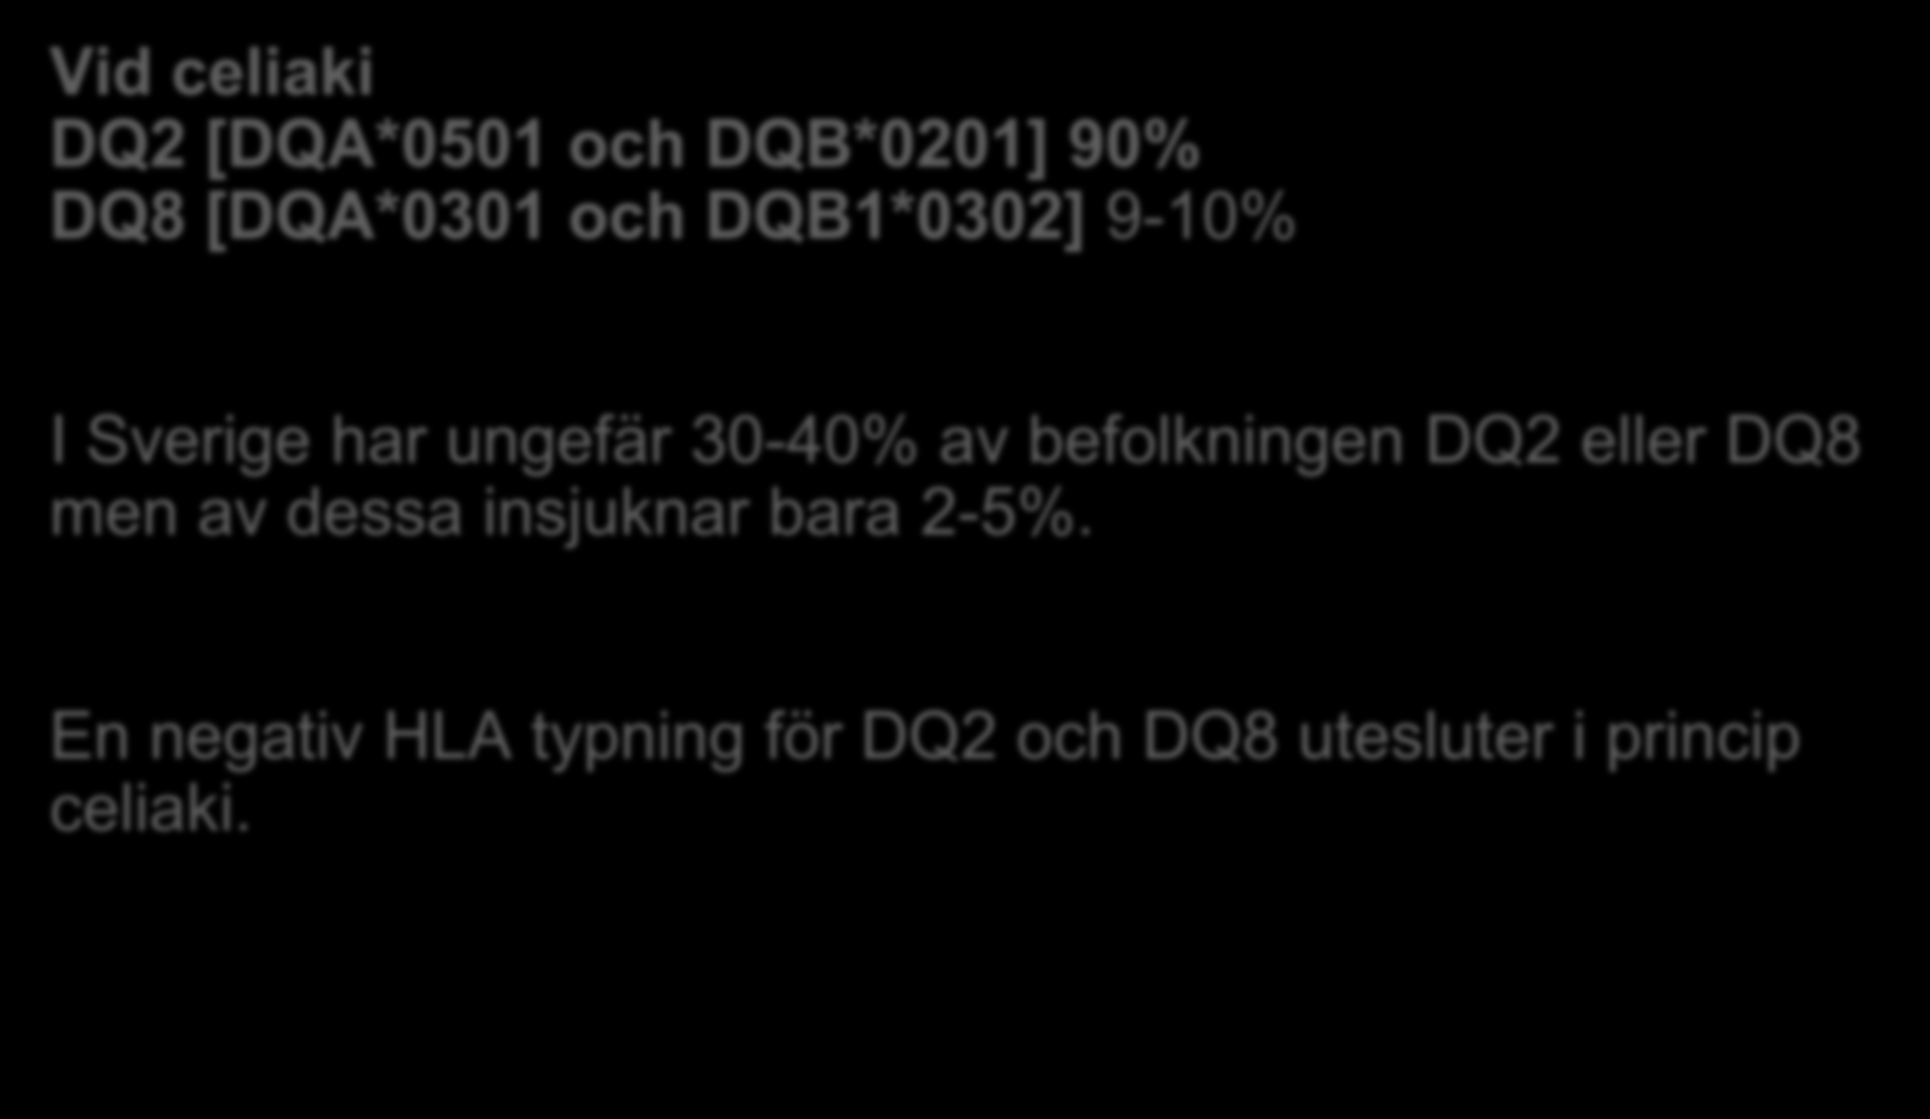 HLA II bestämning Vid celiaki DQ2 [DQA*0501 och DQB*0201] 90% DQ8 [DQA*0301 och DQB1*0302] 9-10% I Sverige har ungefär 30-40% av